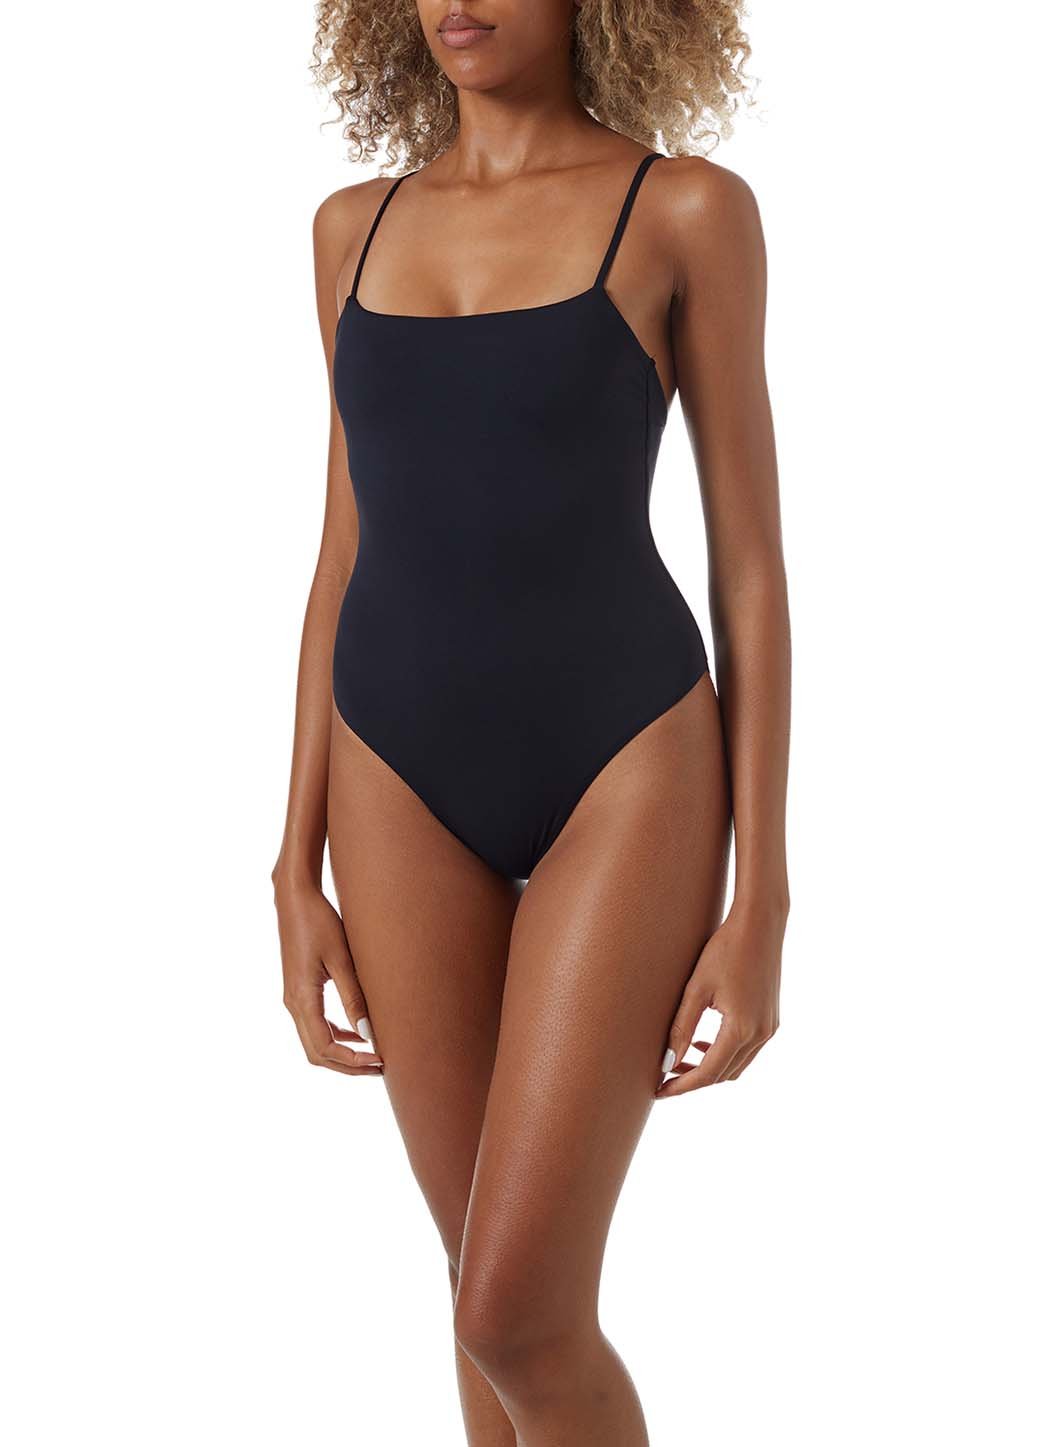 maui-black-eco-skinny-strap-over-the-shoulder-swimsuit-model_F